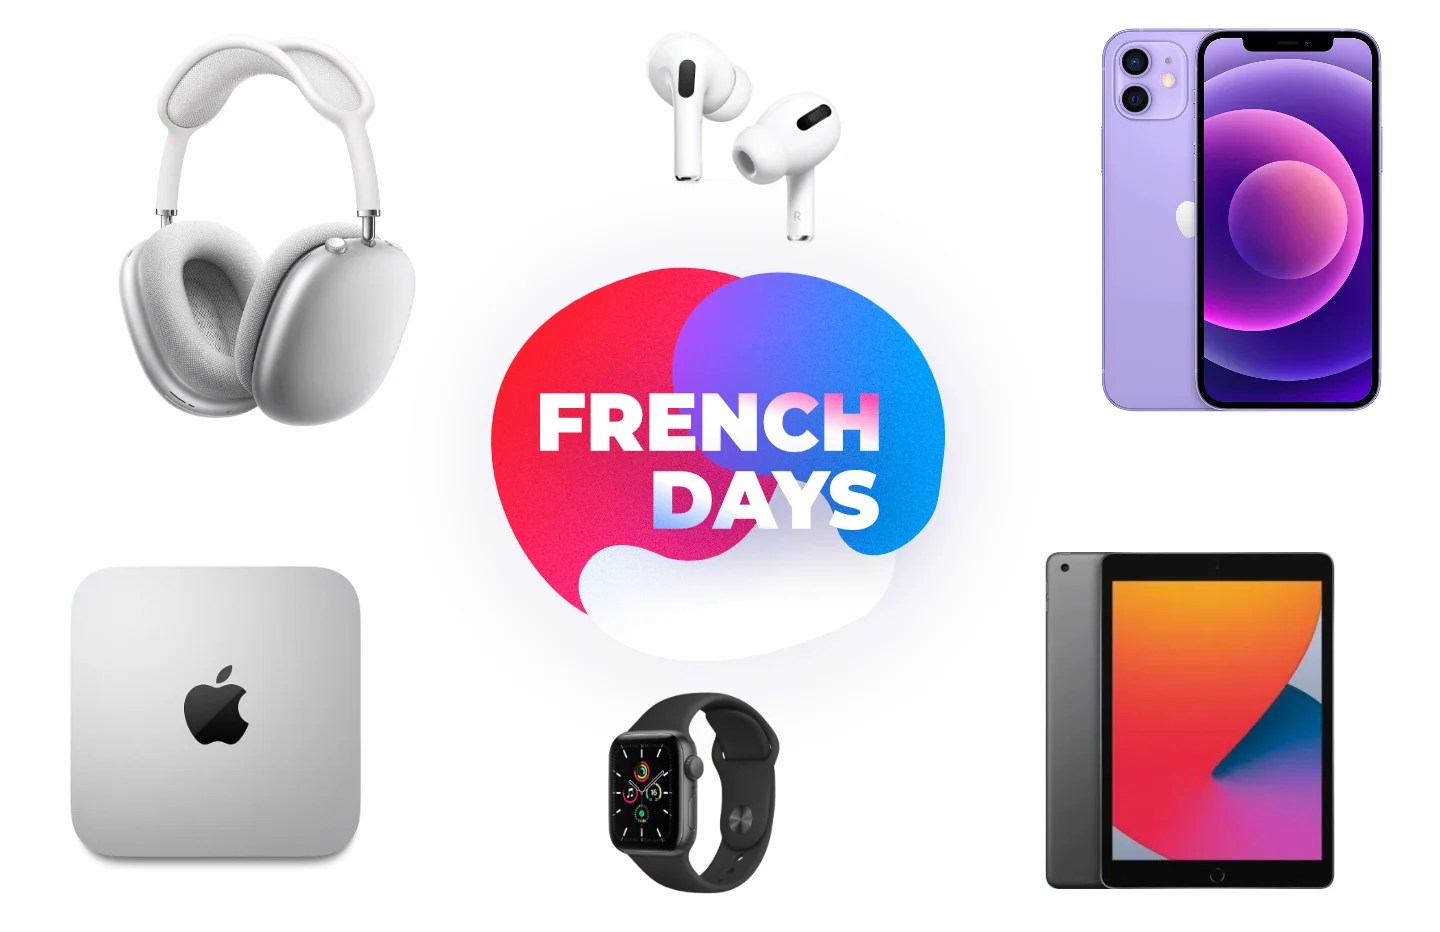 De nombreux produits Apple sont en promotion pendant les French Days